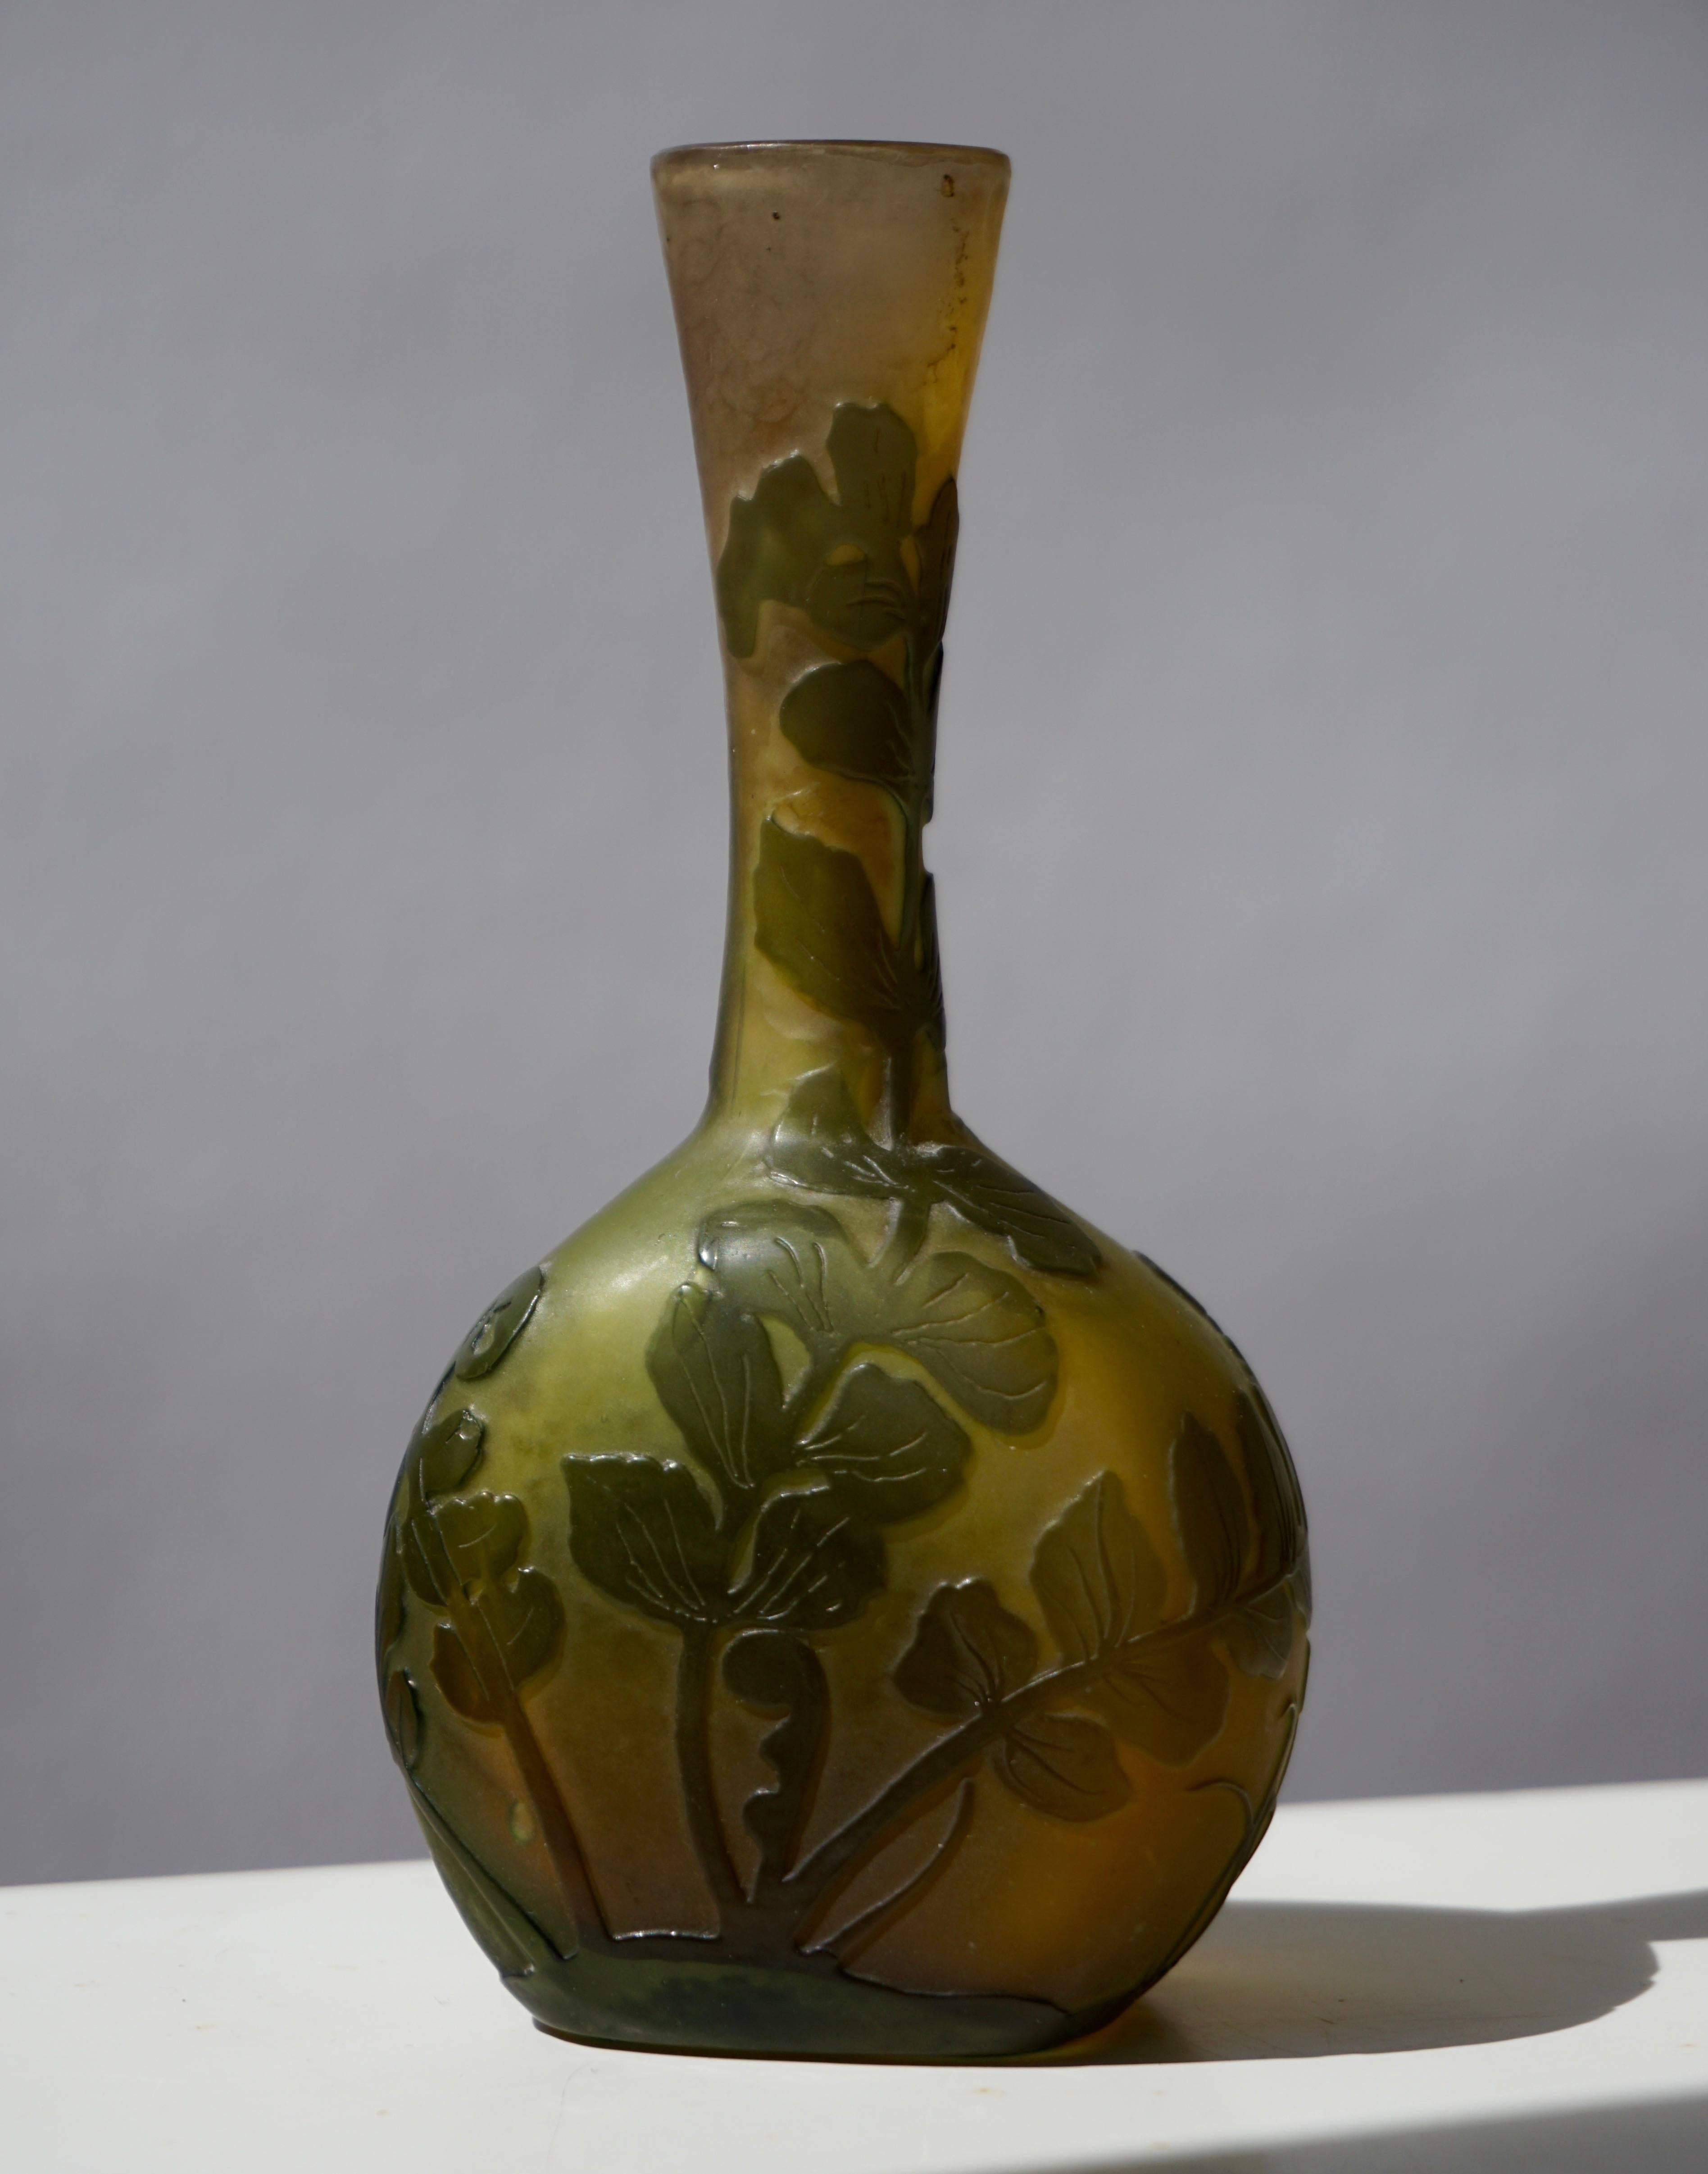 Emile Gallé French Art Nouveau Cameo Glass Vase (Art nouveau)